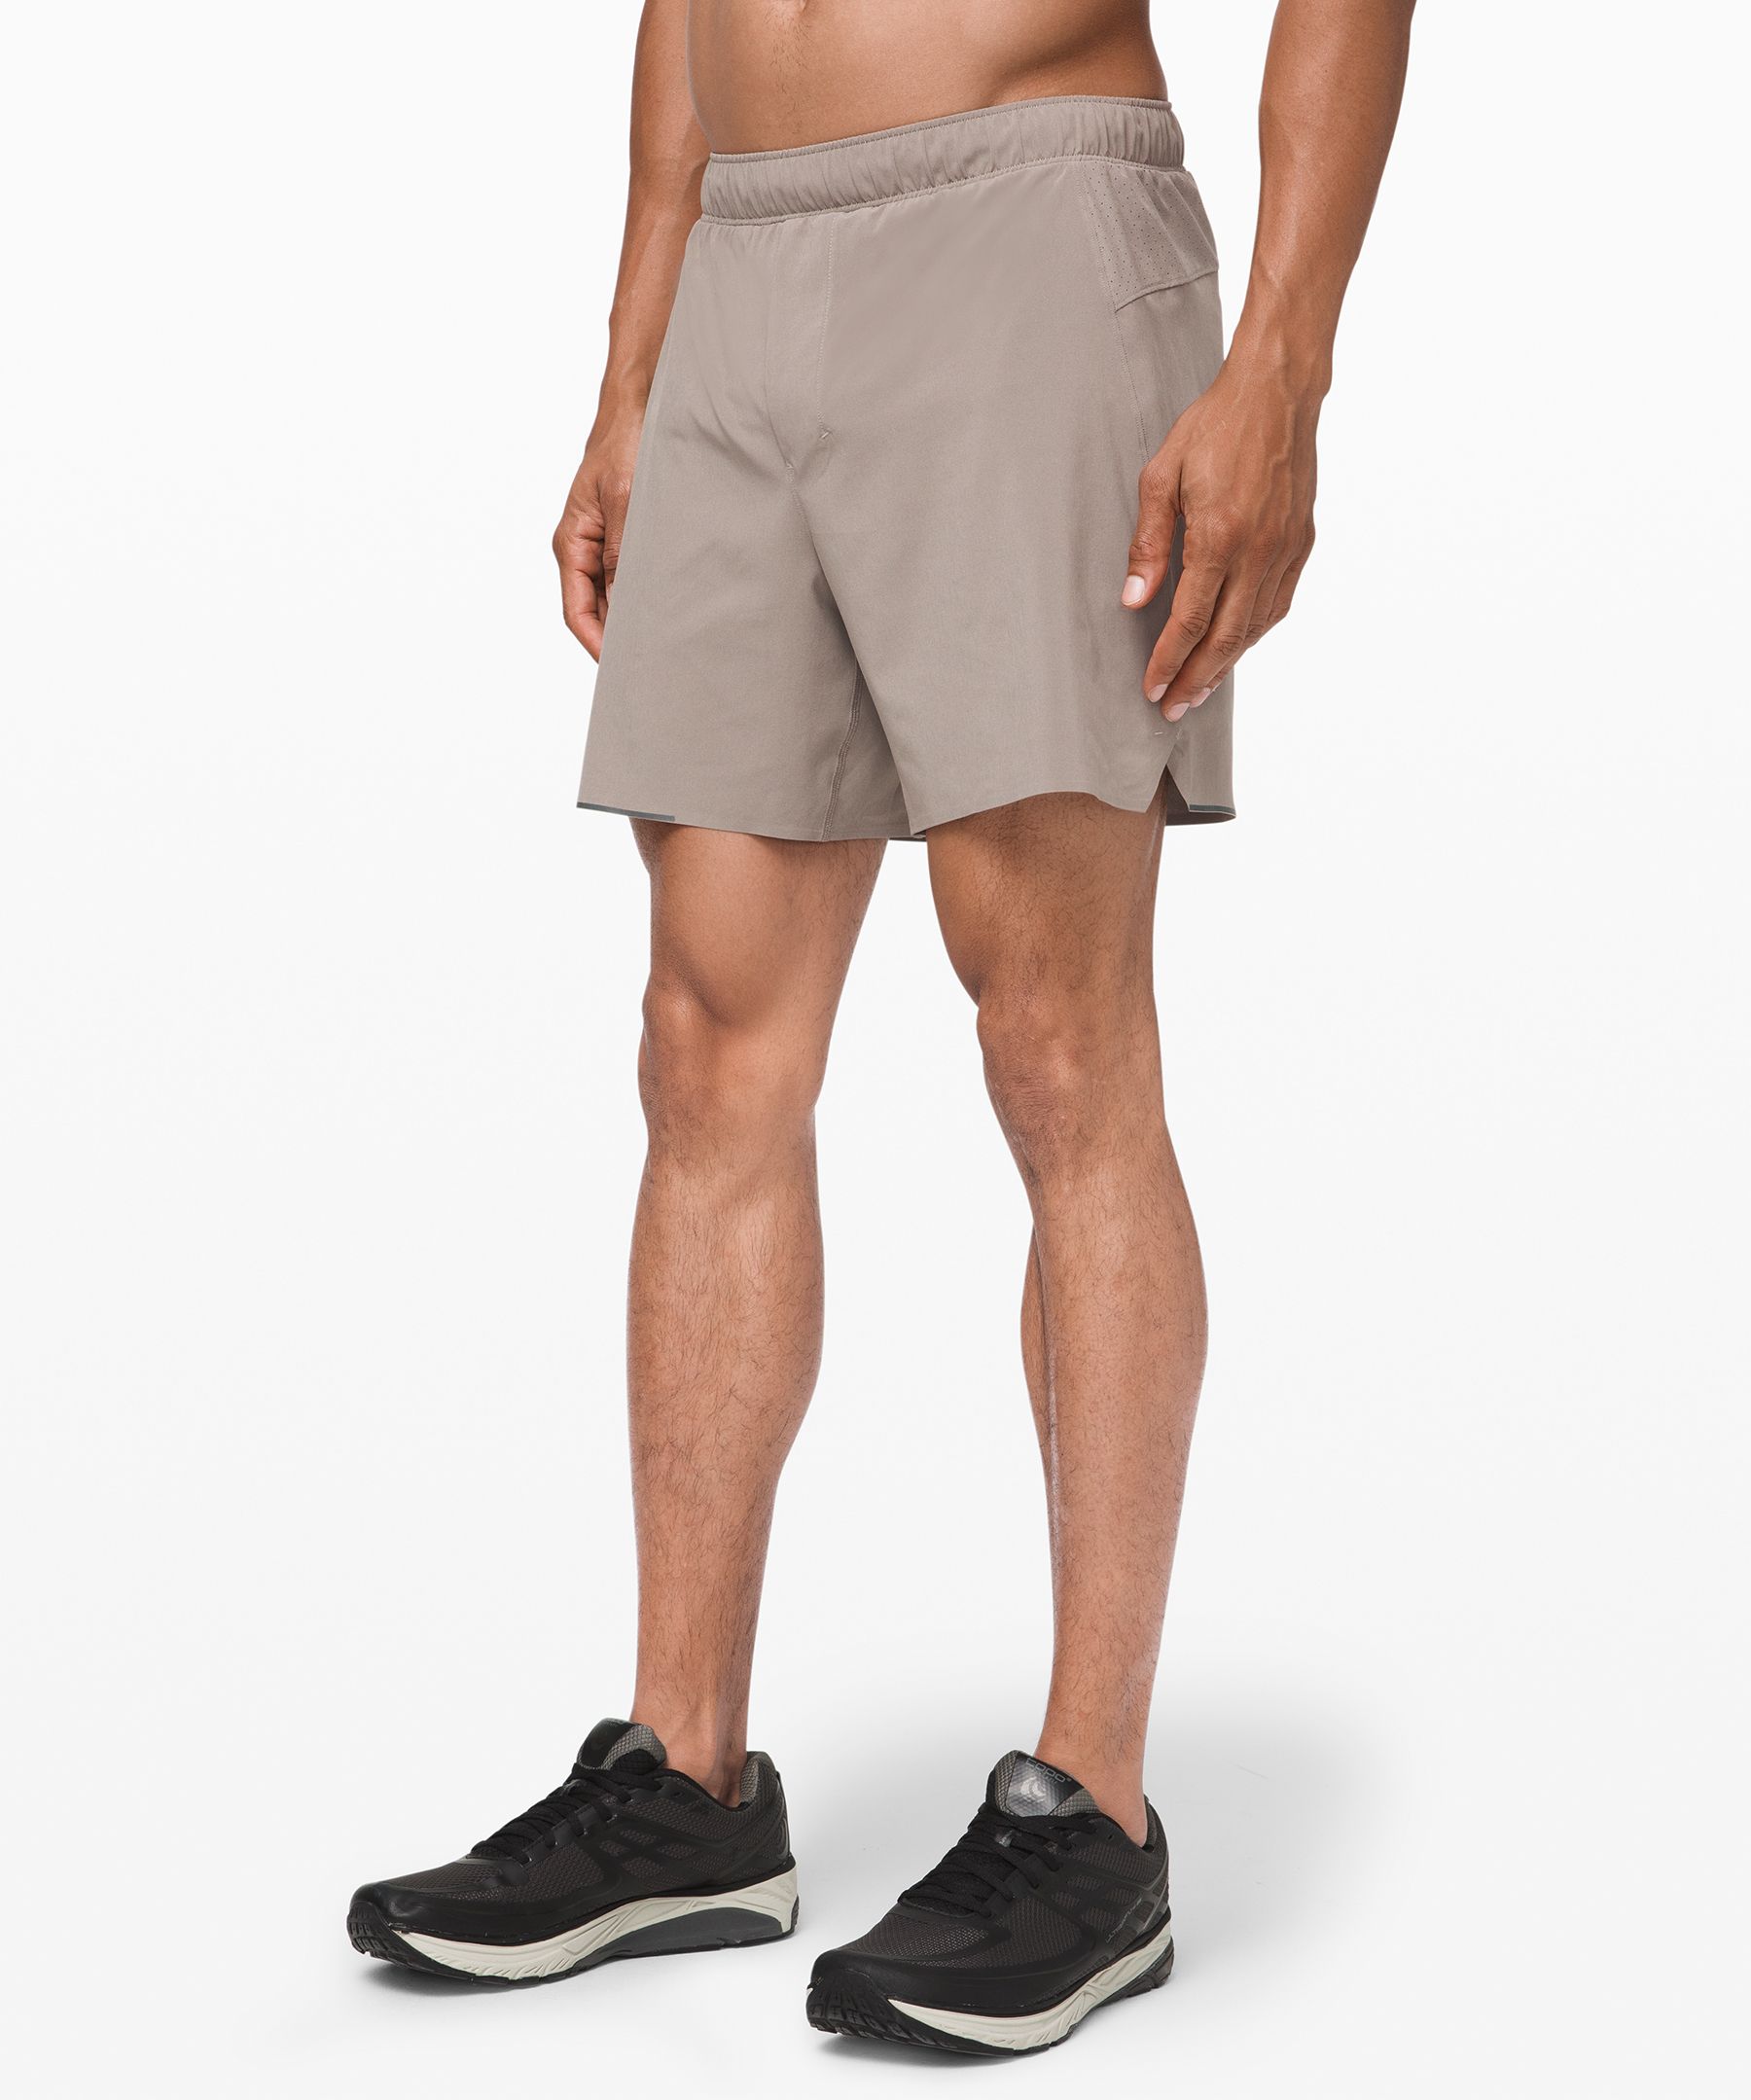 guys lululemon shorts